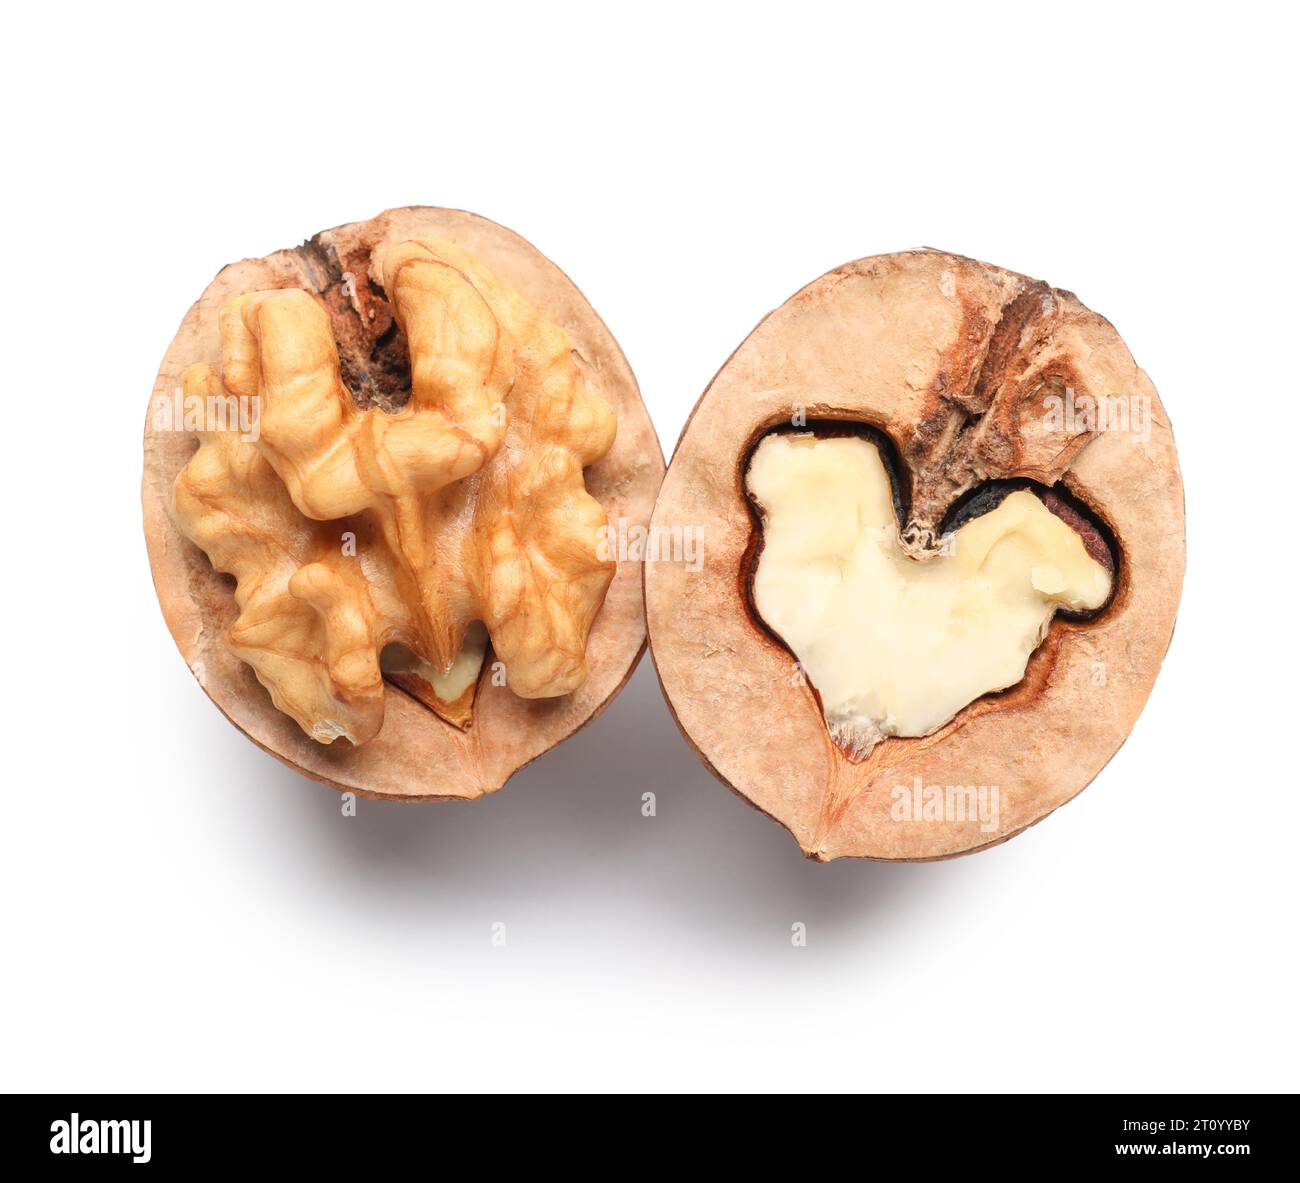 Halves of walnut on white background Stock Photo